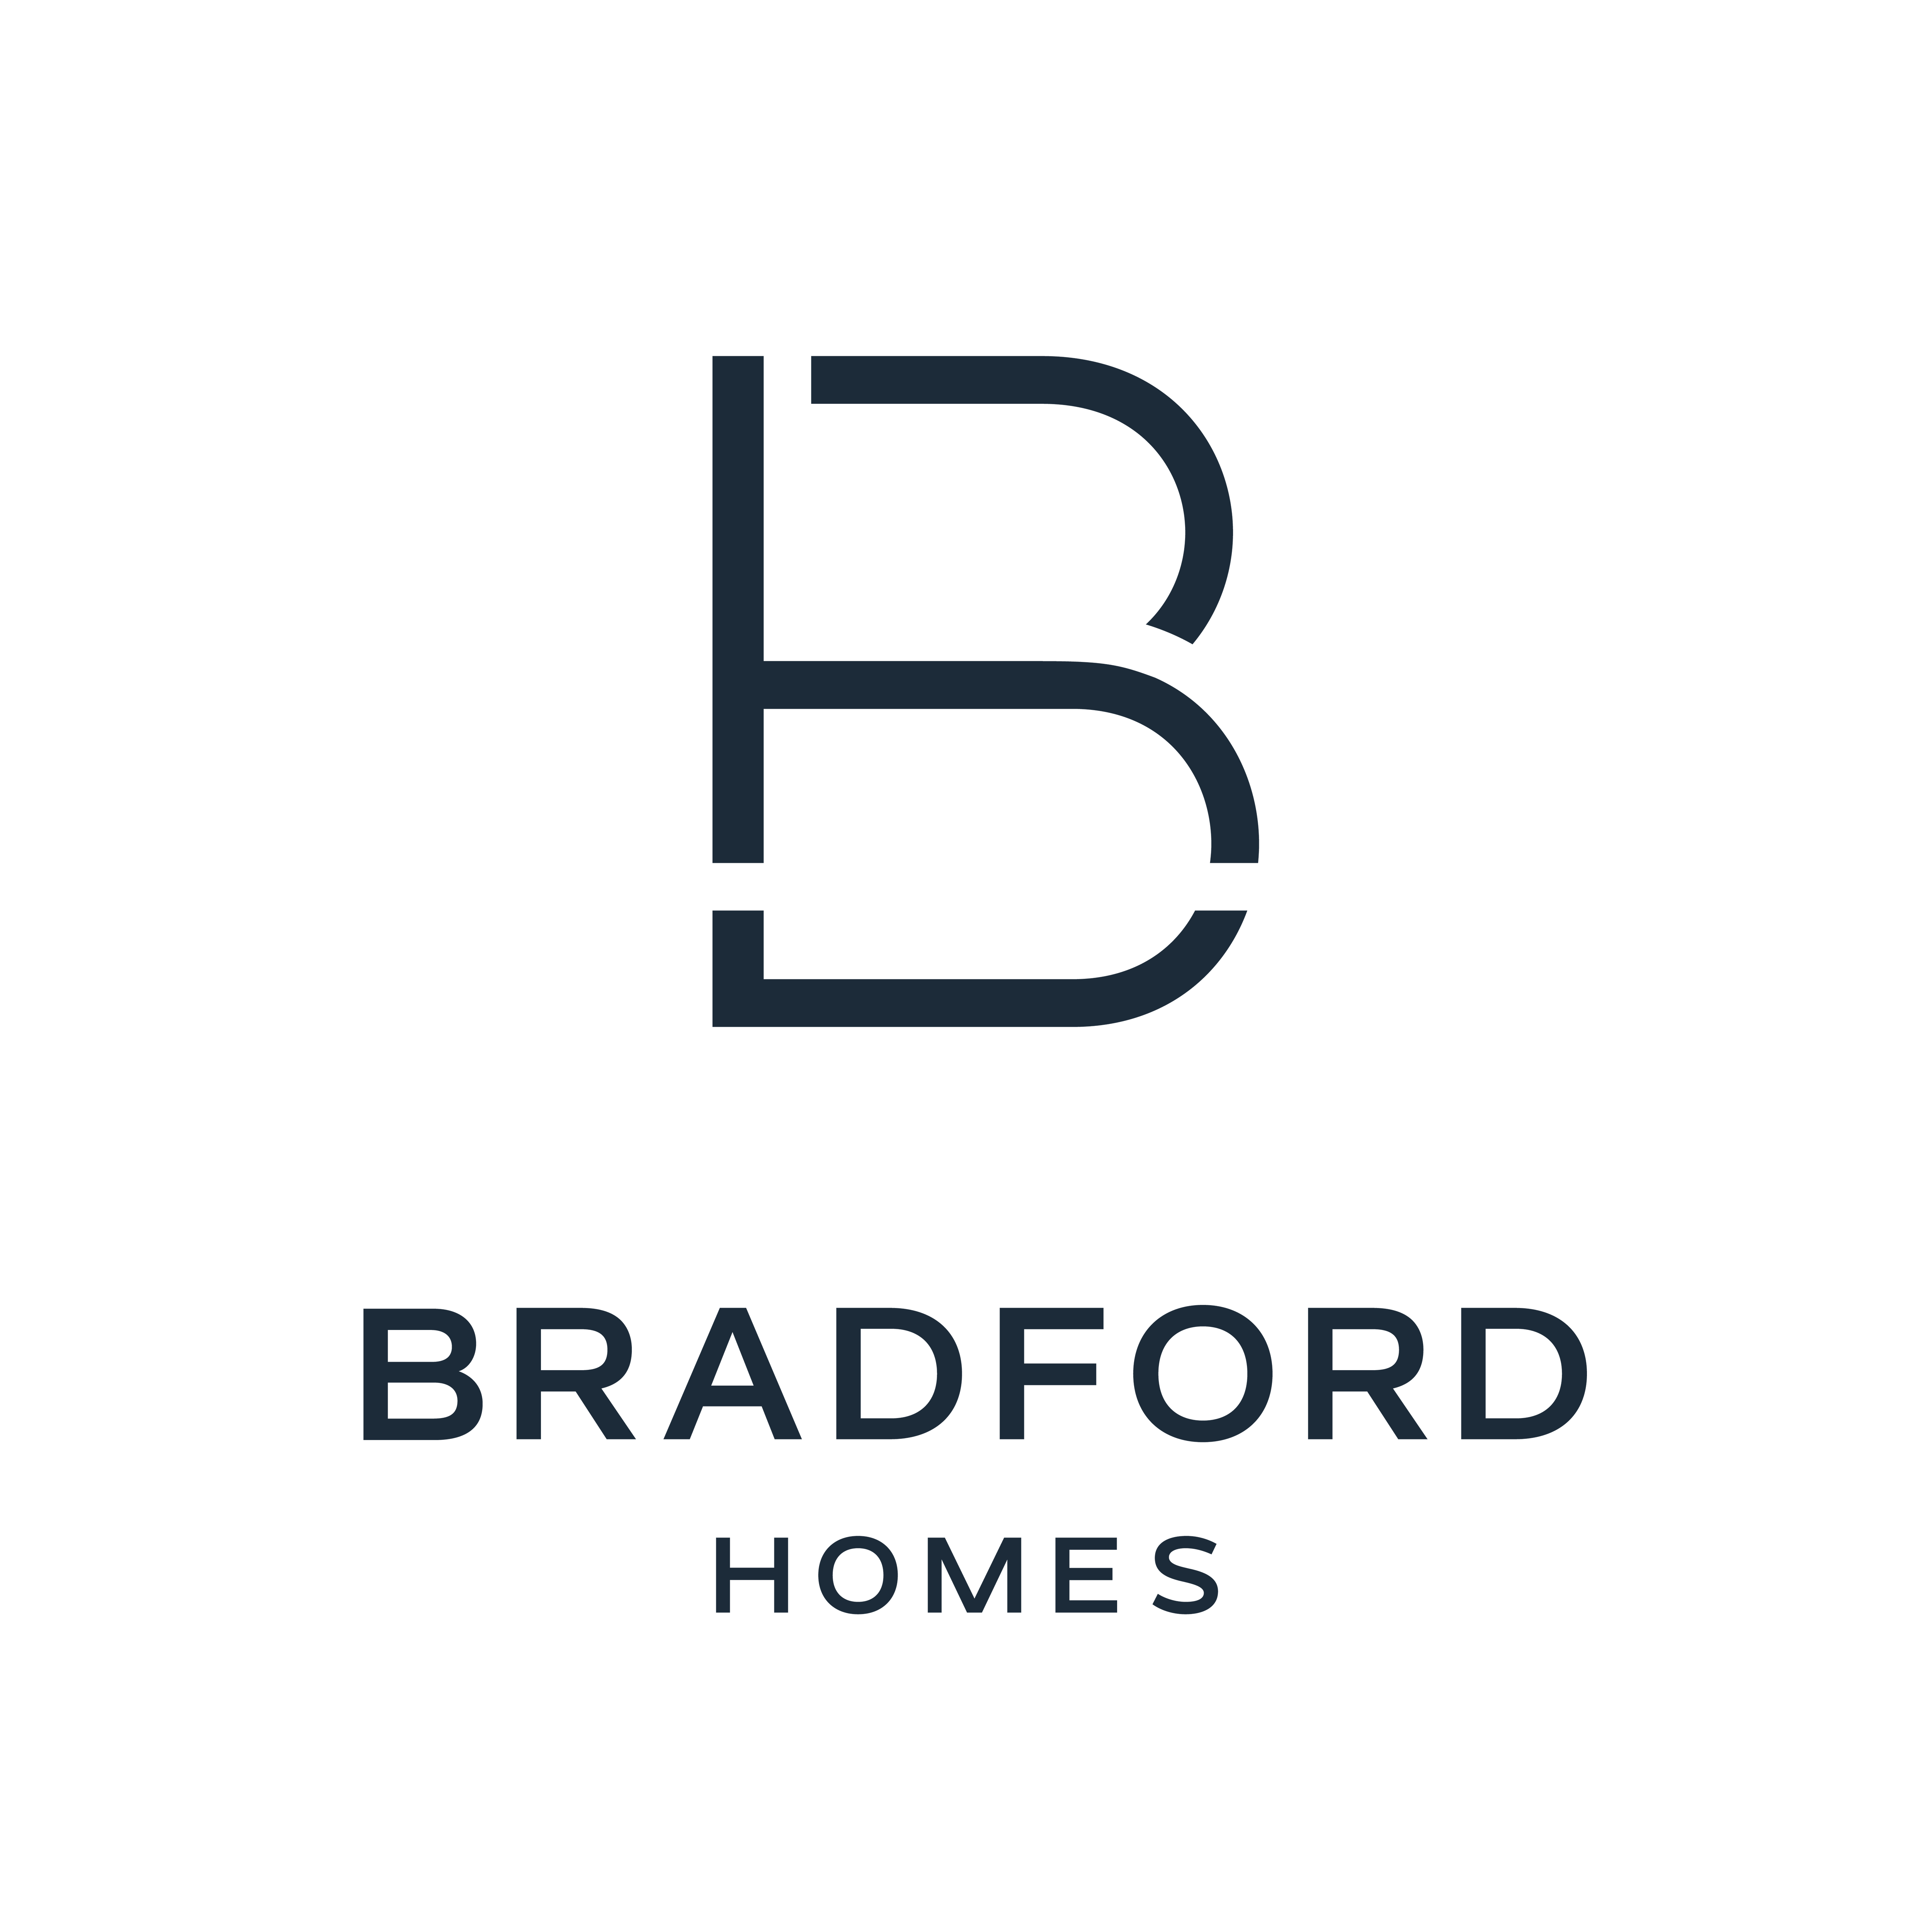 Bradford Homes (Scott Salisbury Group)